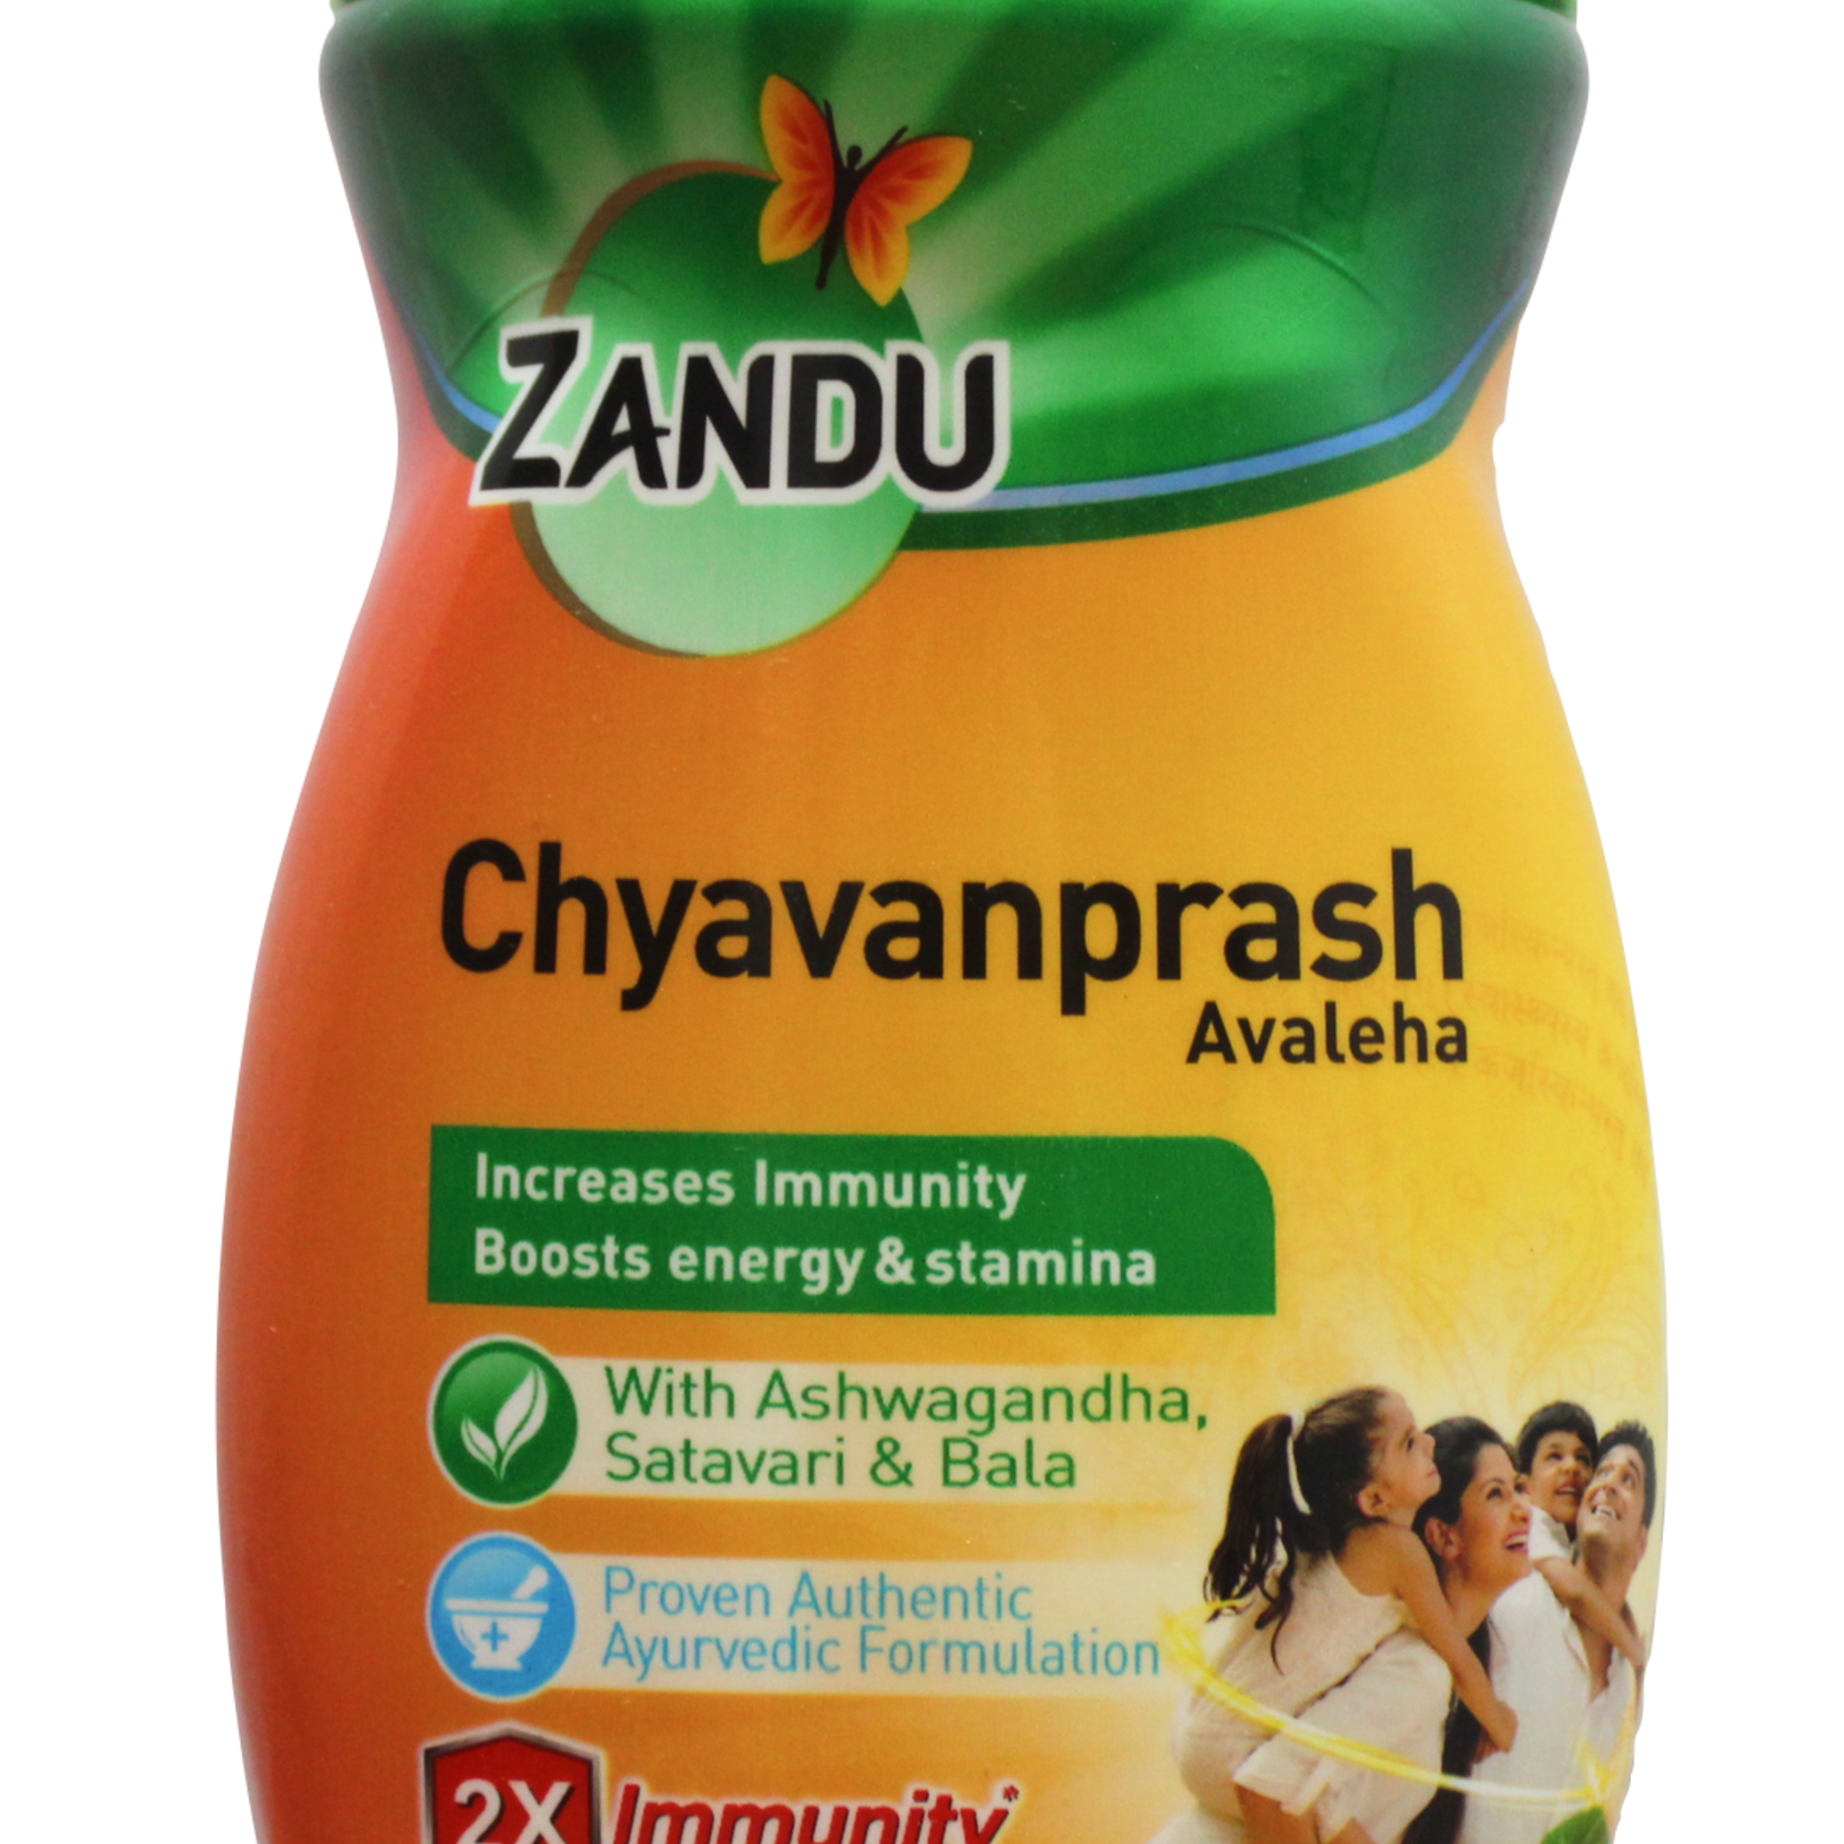 Shop Zandu Chyawanprash 450gm at price 180.00 from Zandu Online - Ayush Care